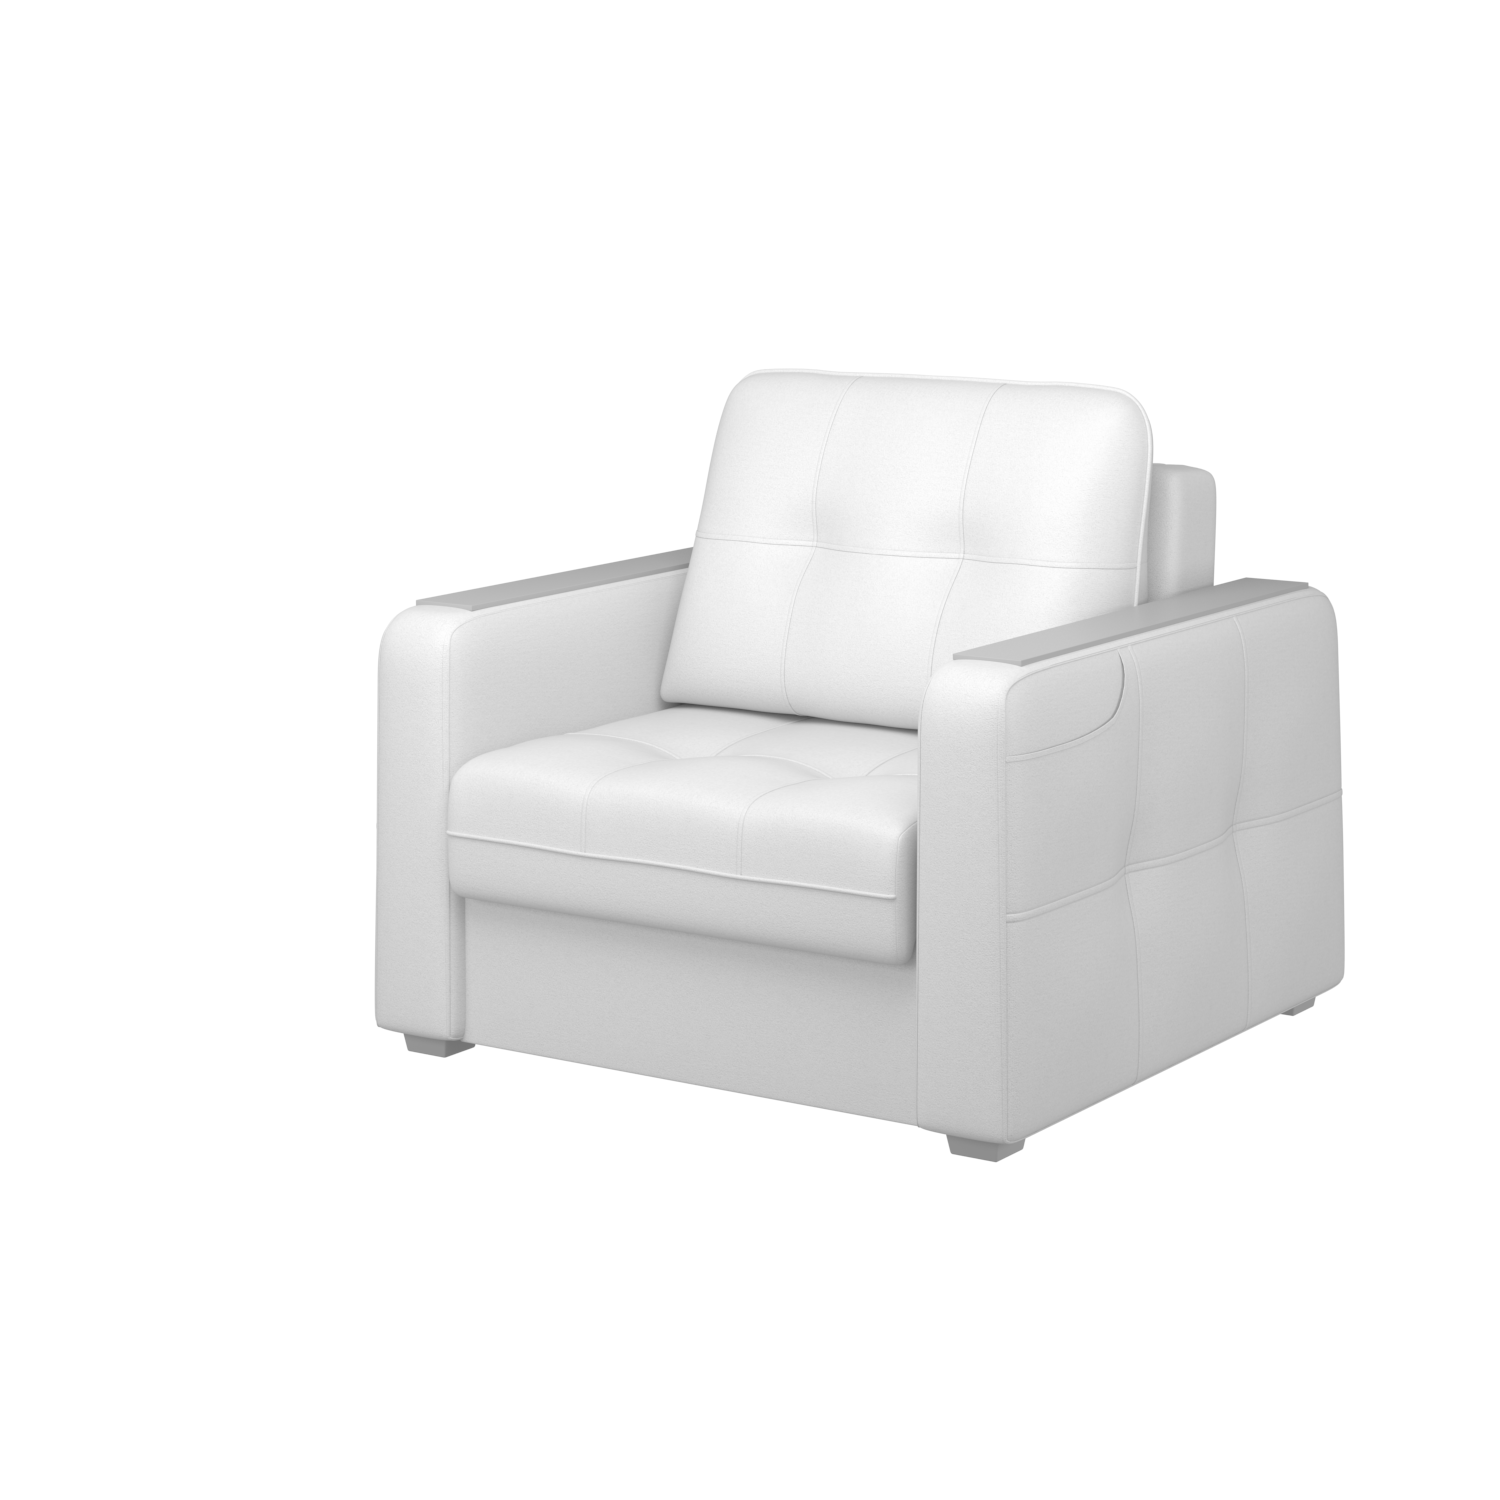 Мягкое кресло с ящиком Киль-3, кКЛ01.мк698.698у